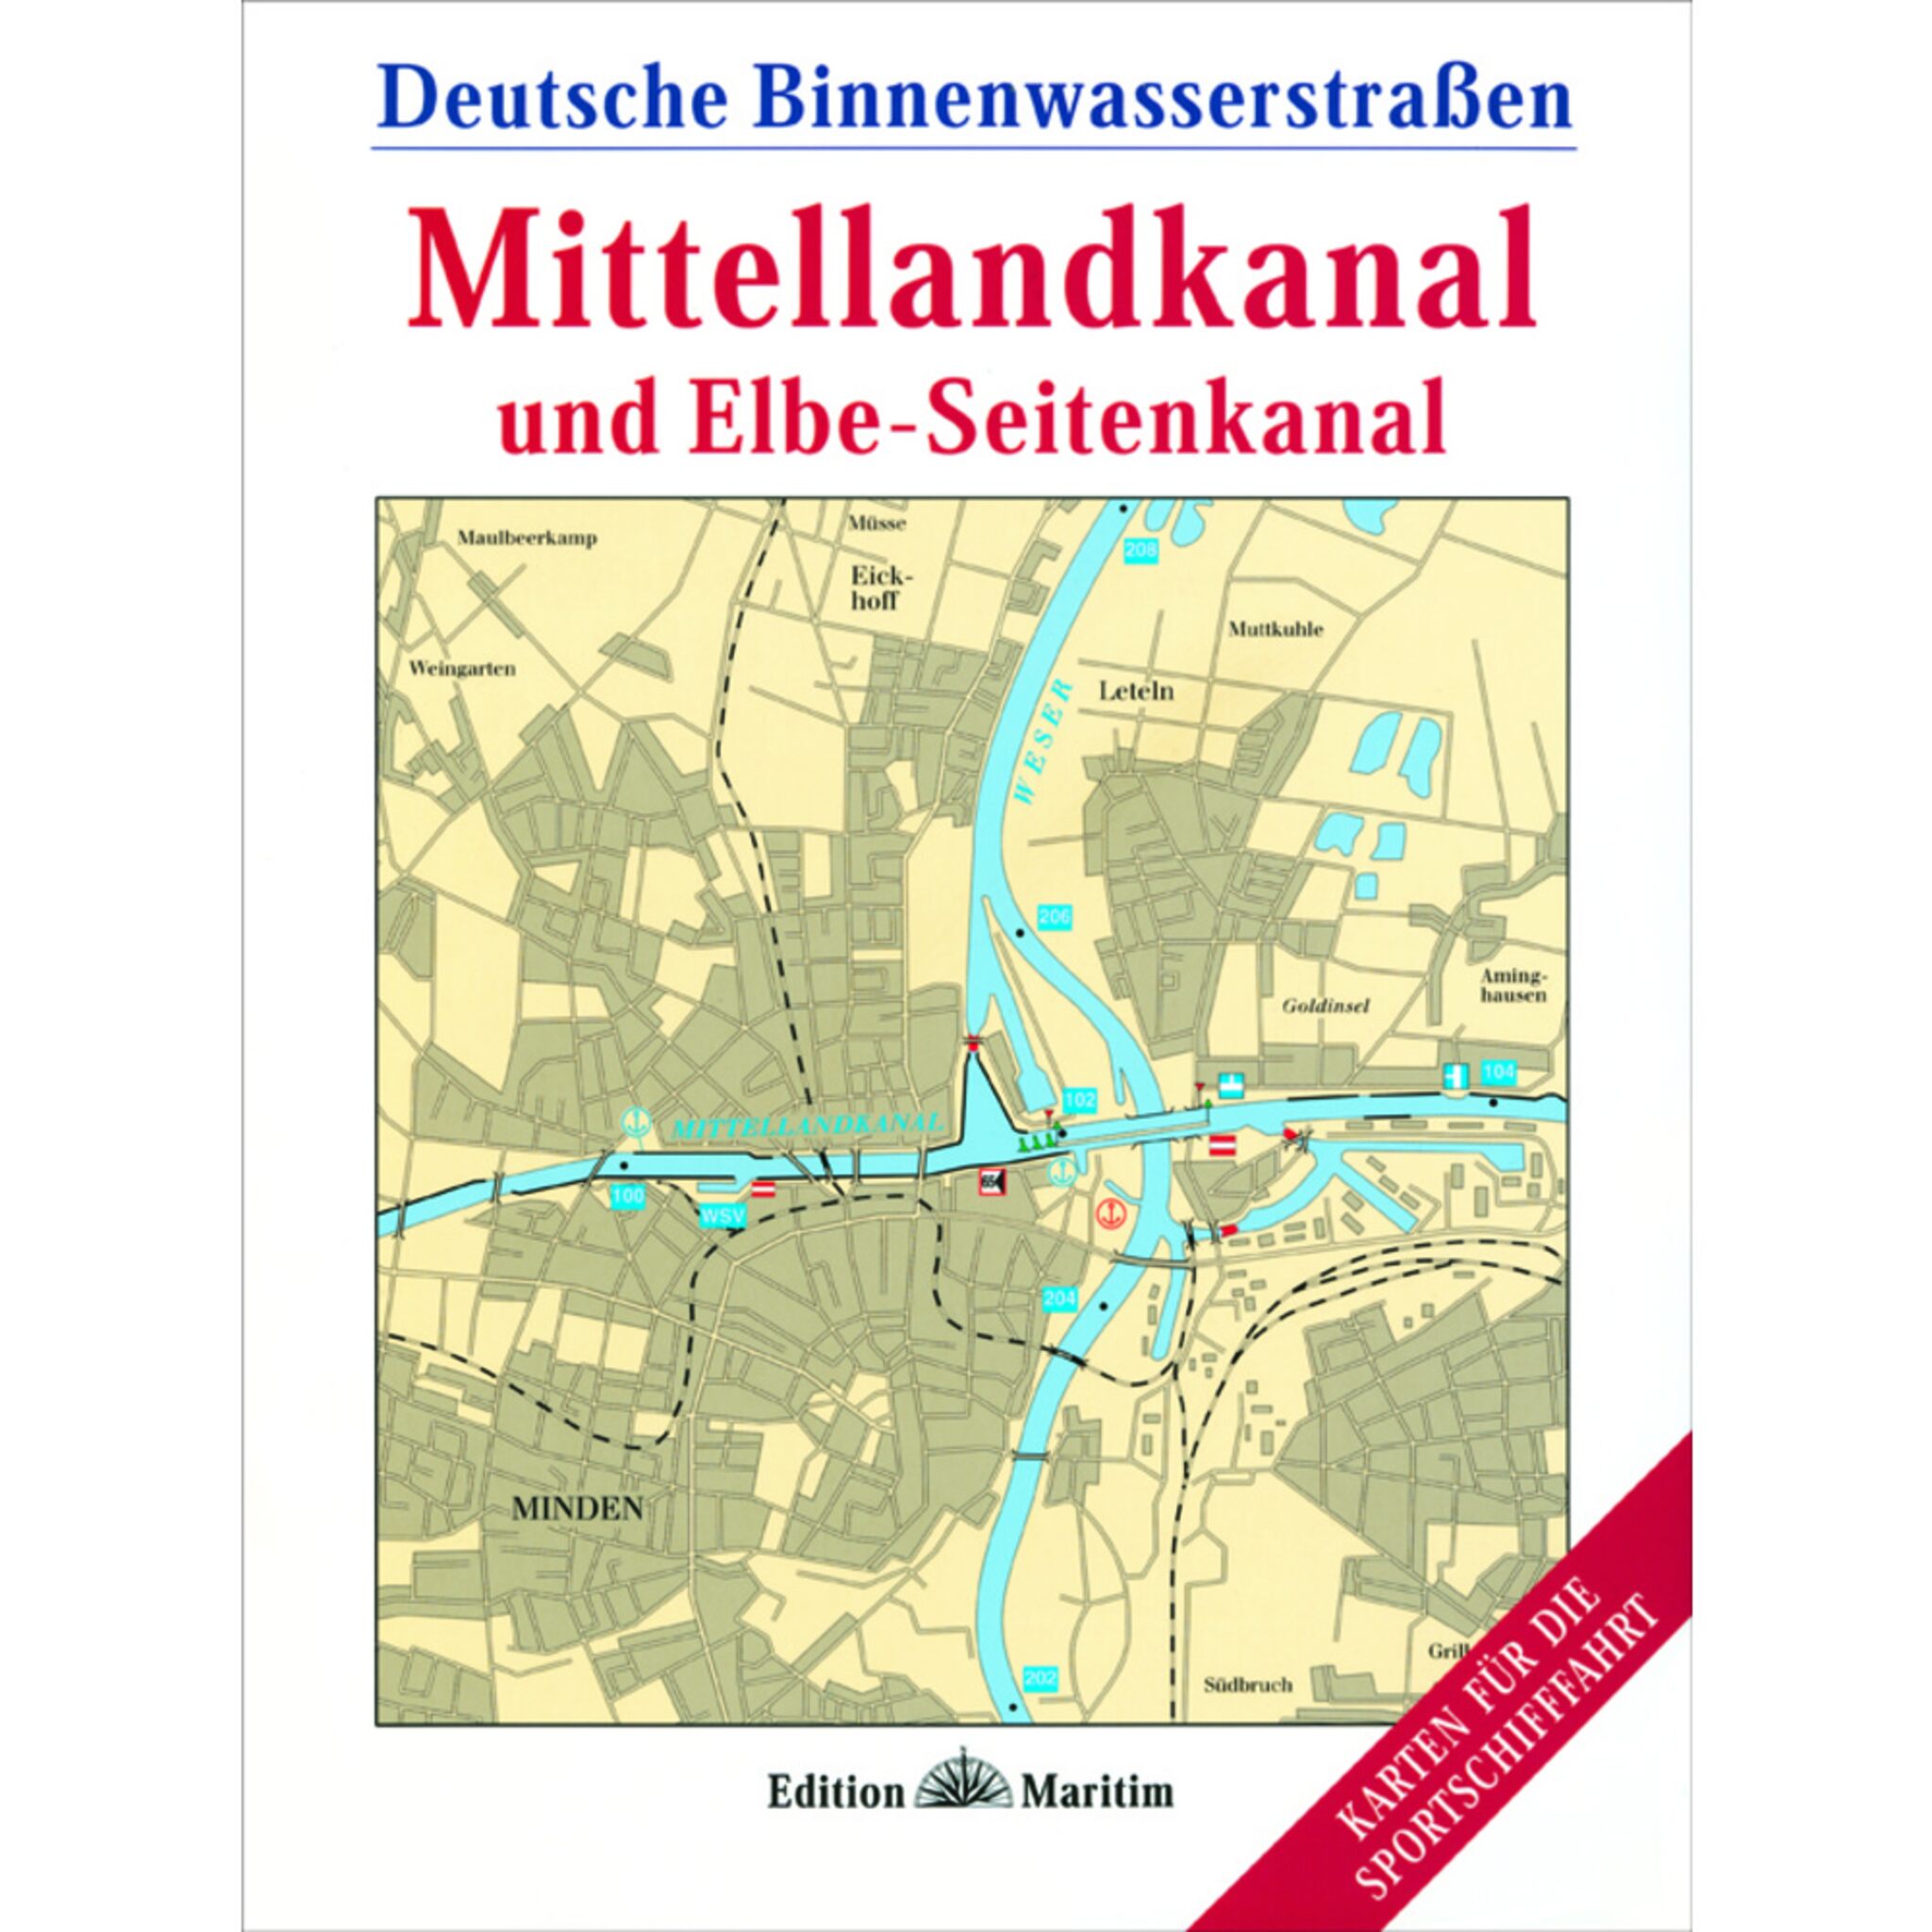 Edition Maritim Mittellandkanal und Elbe-Seitenkanal Deutsche Binnenwasserstraßen 1